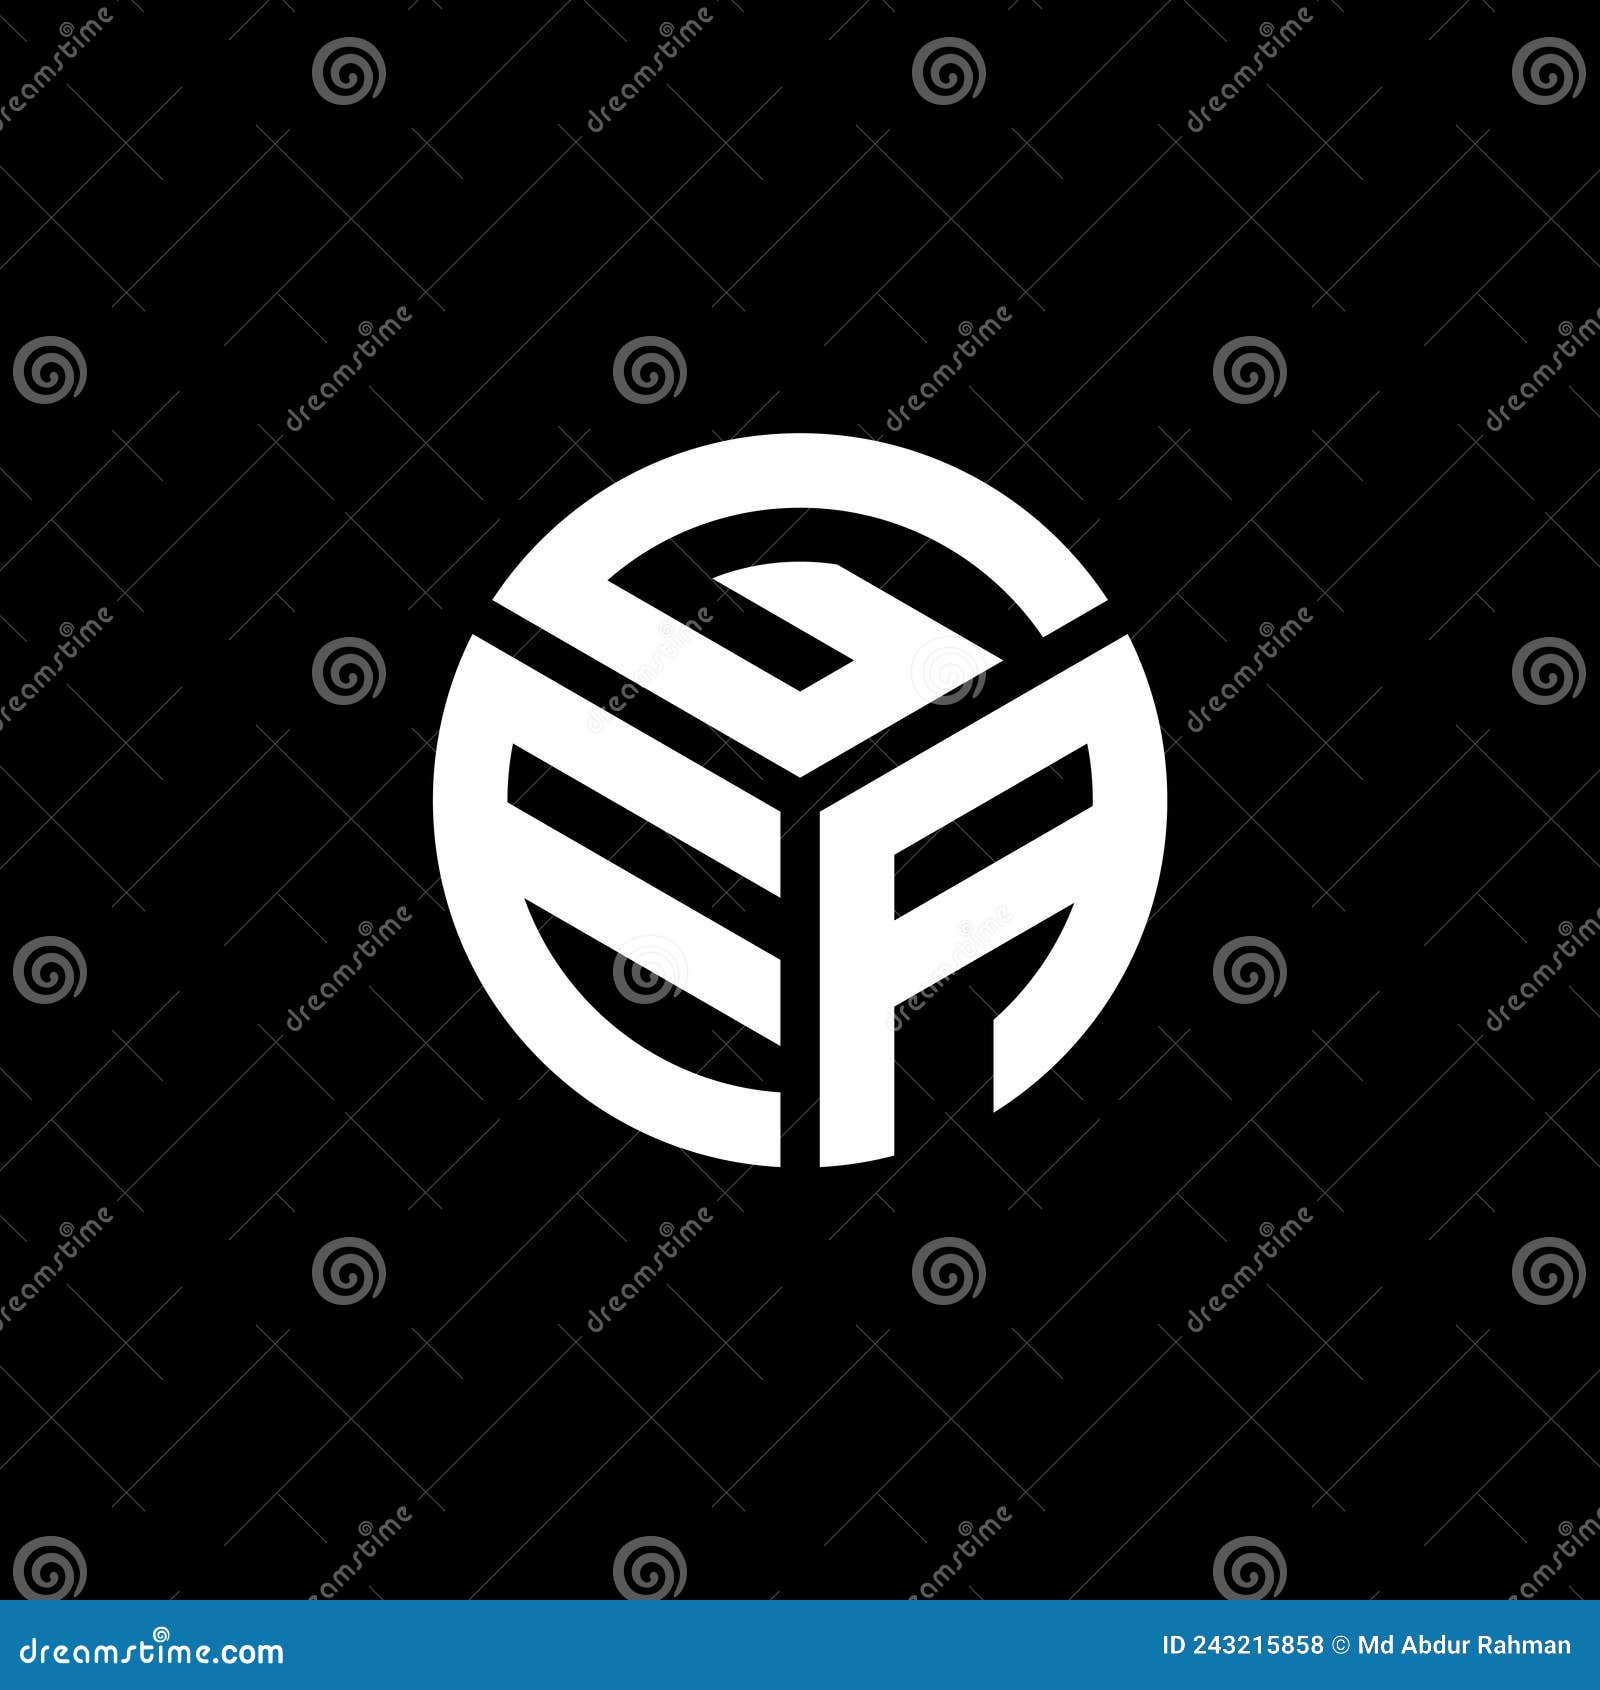 gea letter logo  on black background. gea creative initials letter logo concept. gea letter 